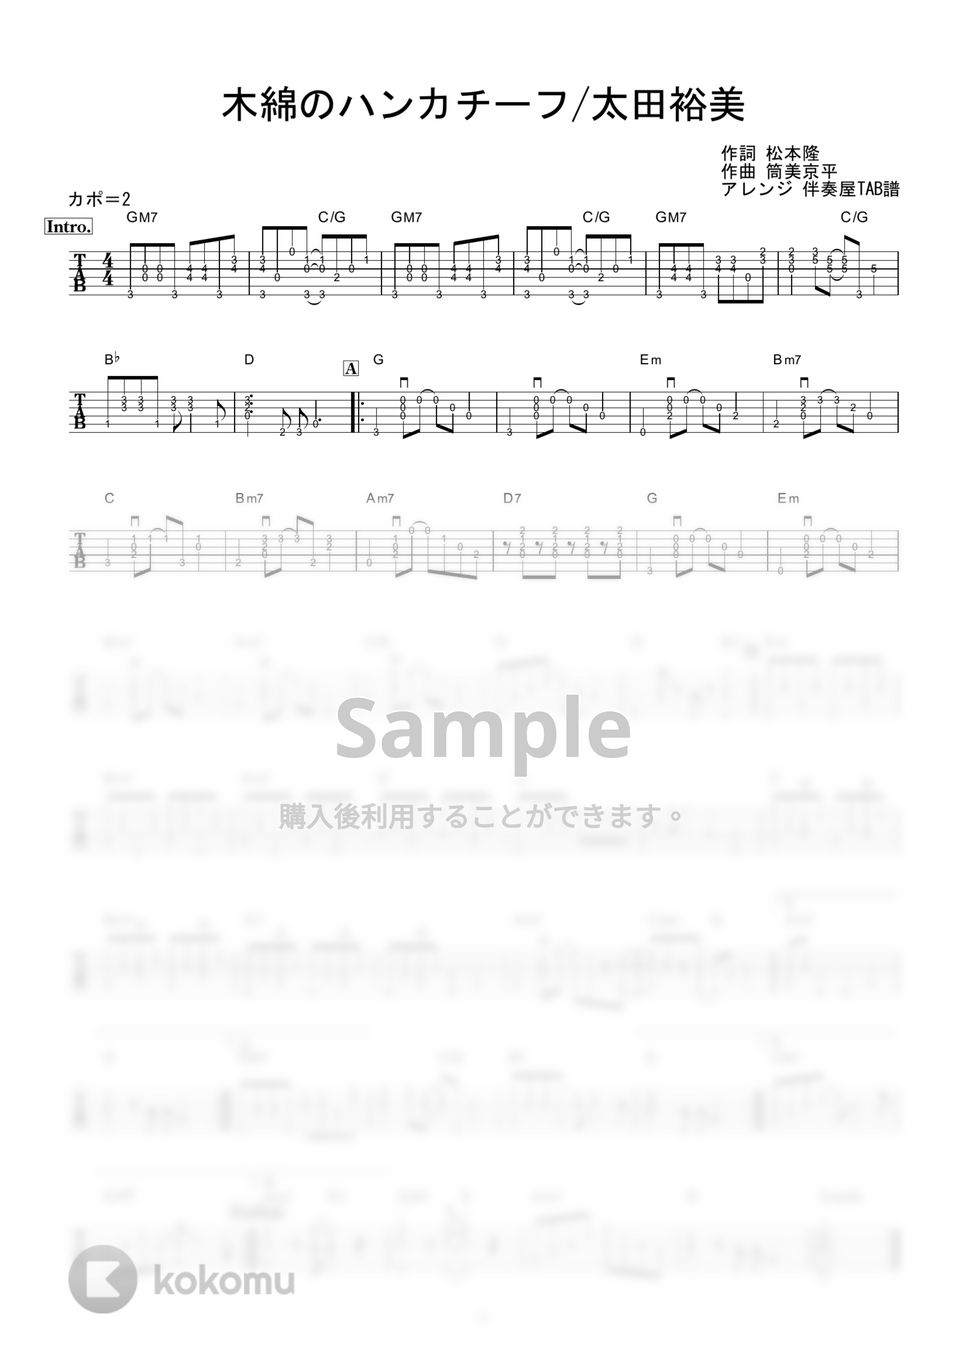 太田裕美 - 木綿のハンカチーフ (ギター伴奏/イントロ・間奏ソロギター) by 伴奏屋TAB譜